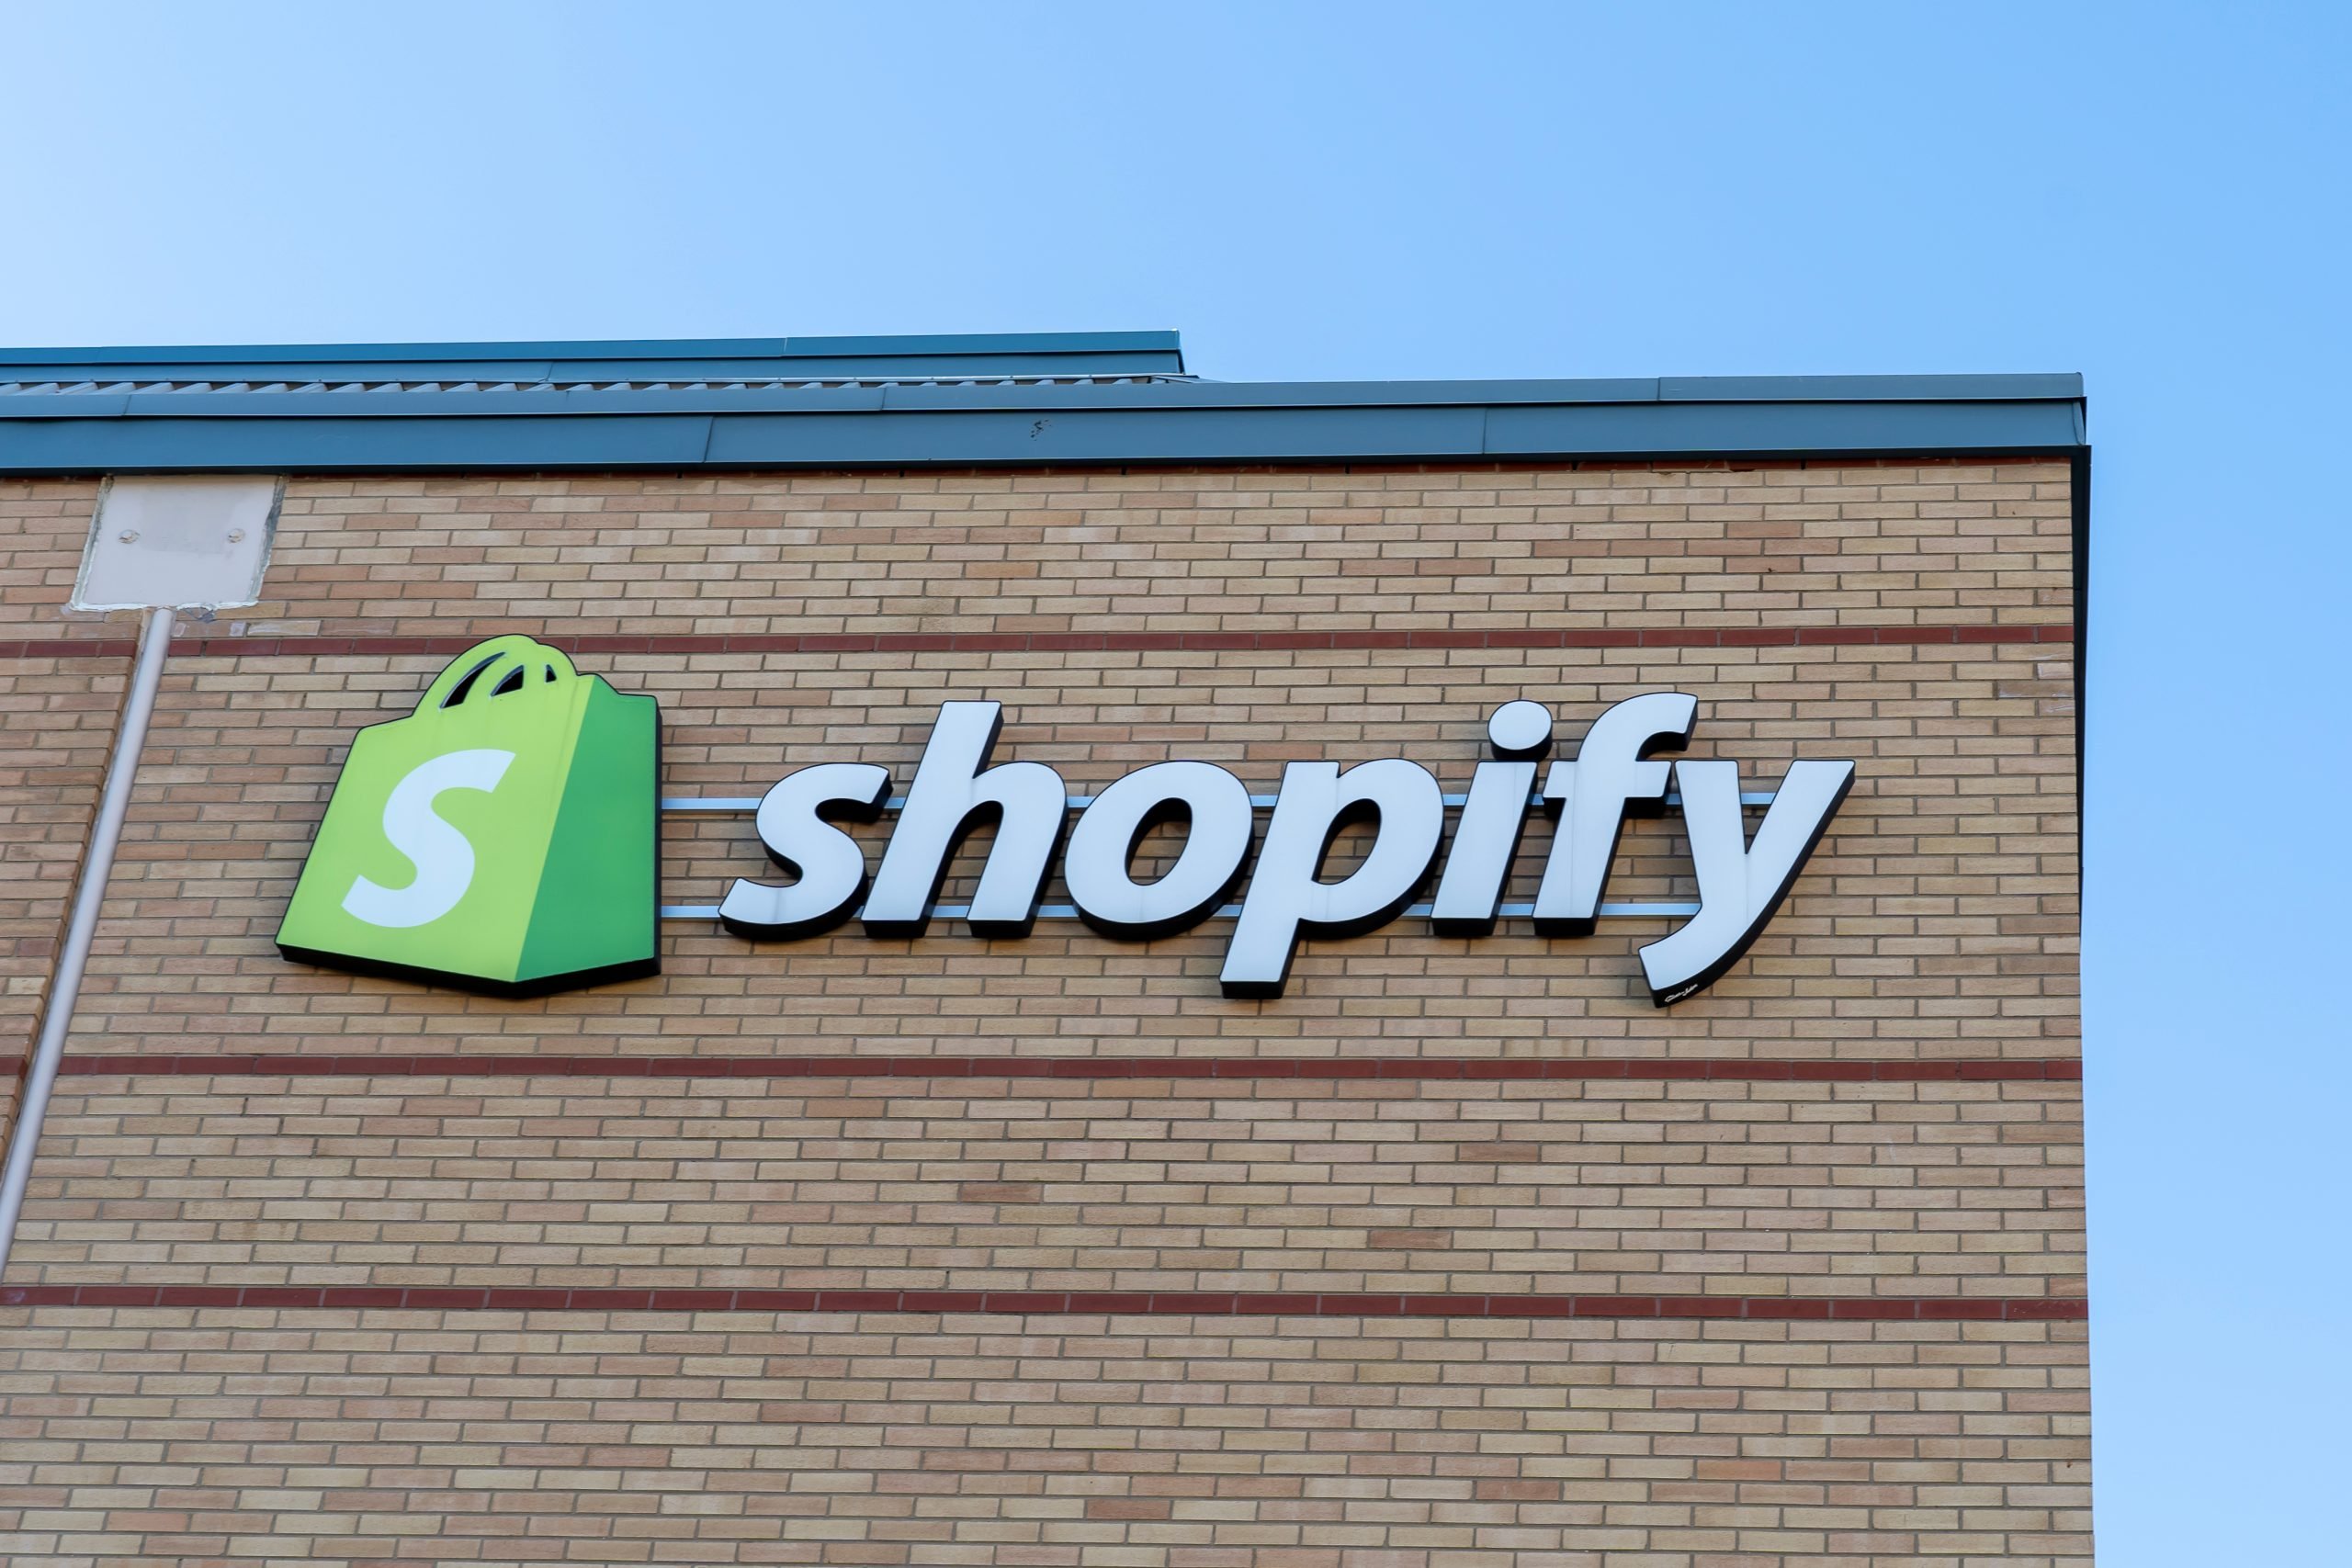 shopify-commence-a-permettre-a-ses-clients-e-commerçants-de-vendre-nfts-directement.jpg